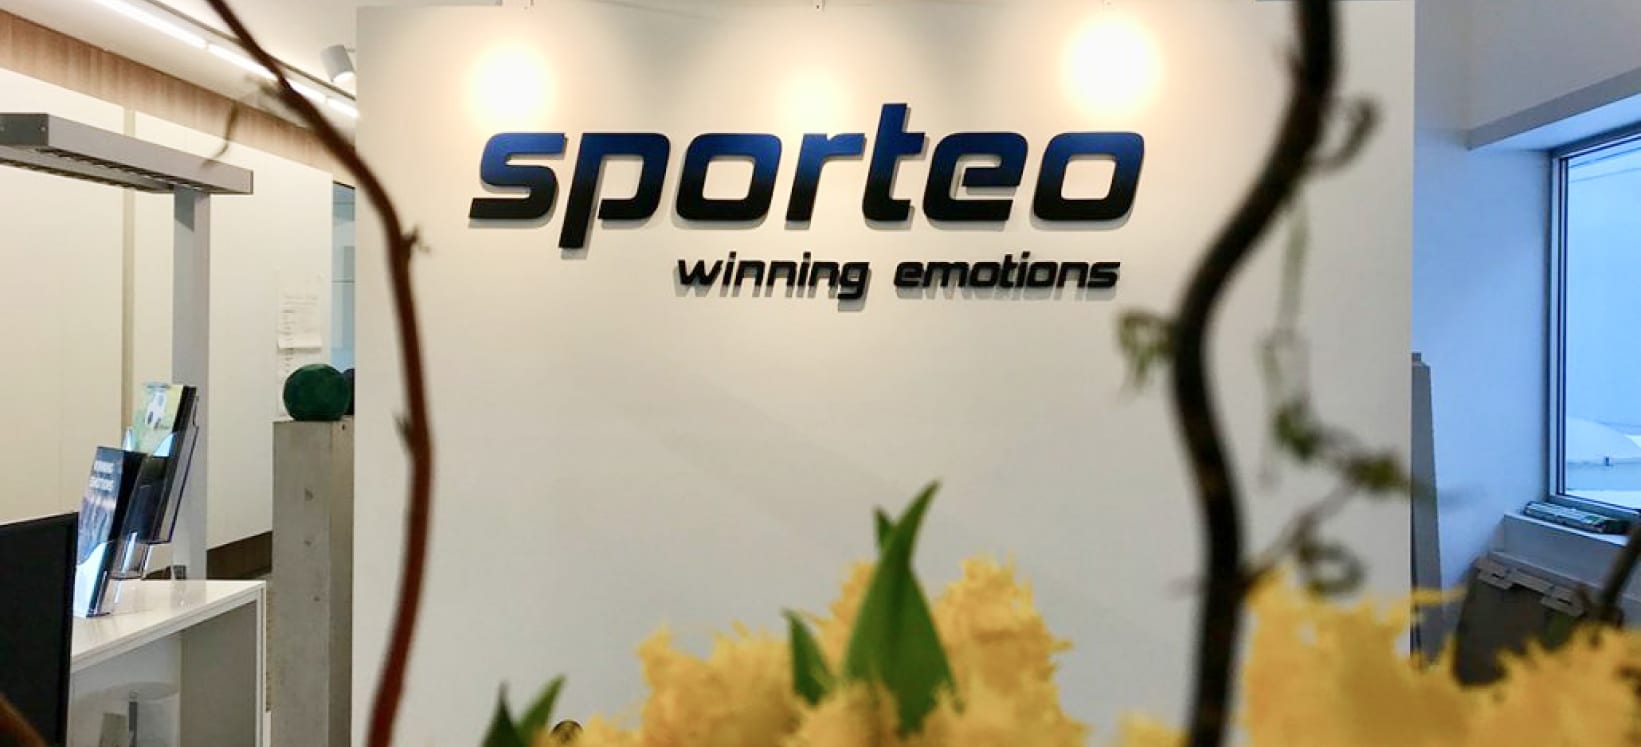 (c) Sporteo.cc